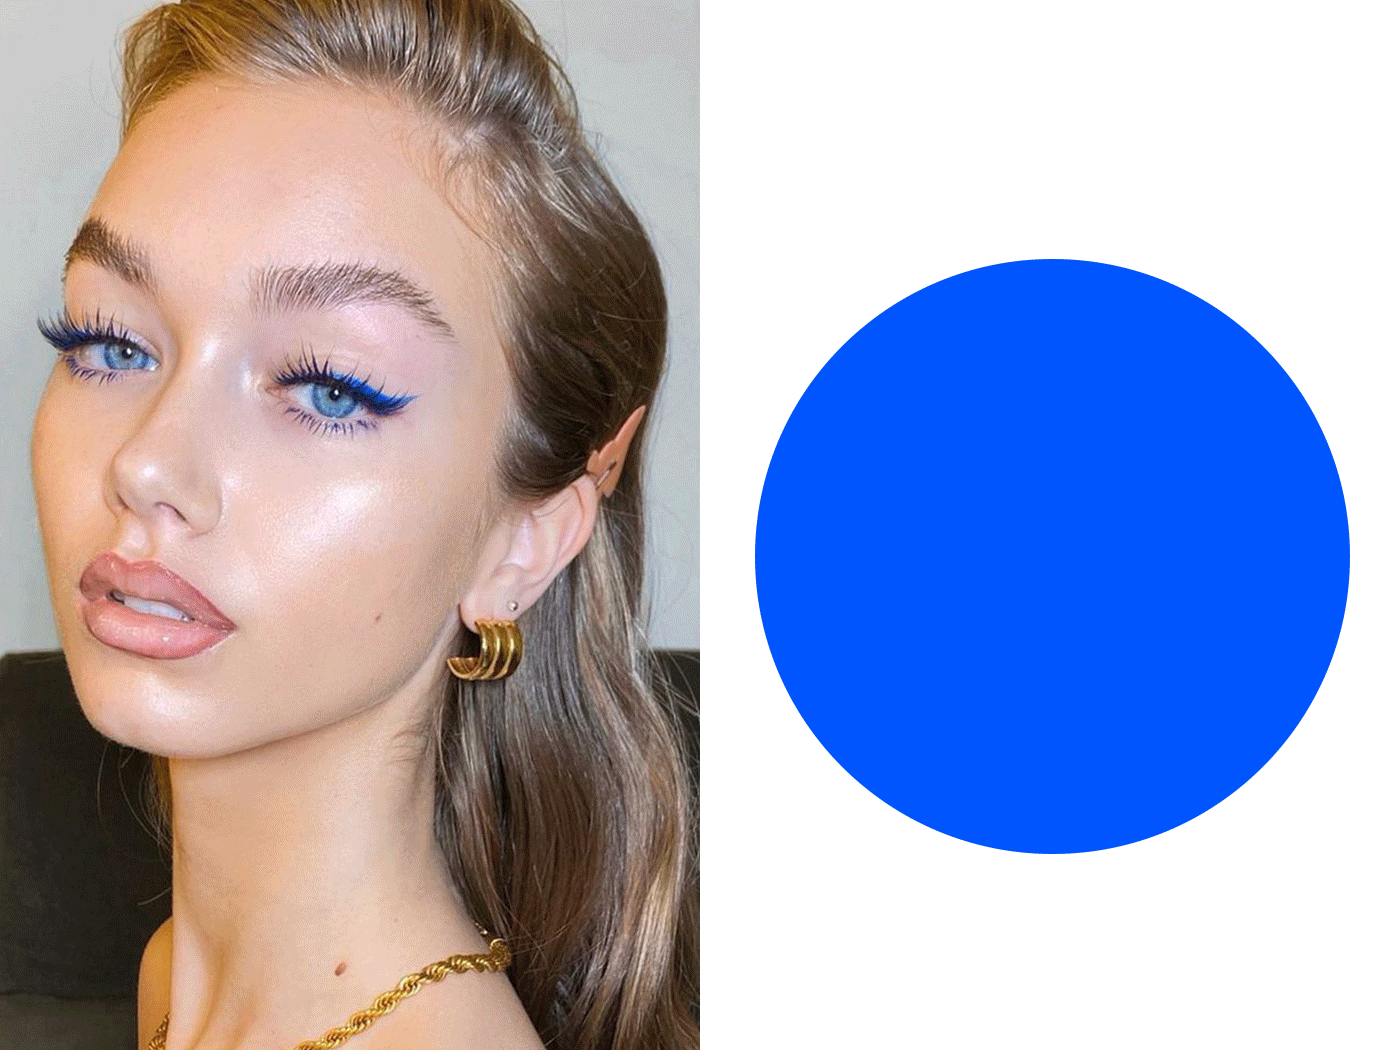 5 φωτογραφίες που θα σε πείσουν να φορέσεις μπλε σκιά και ποιες να επιλέξεις